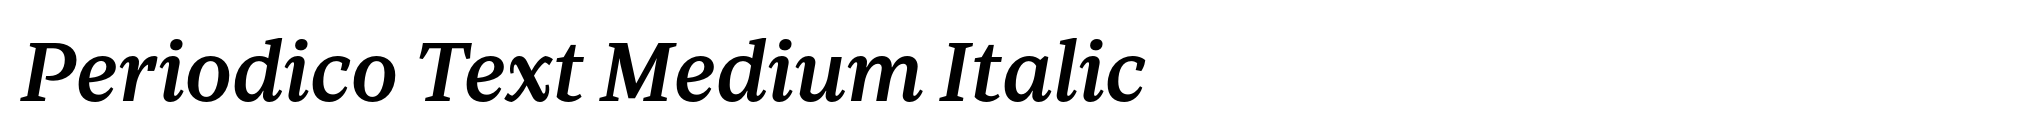 Periodico Text Medium Italic image